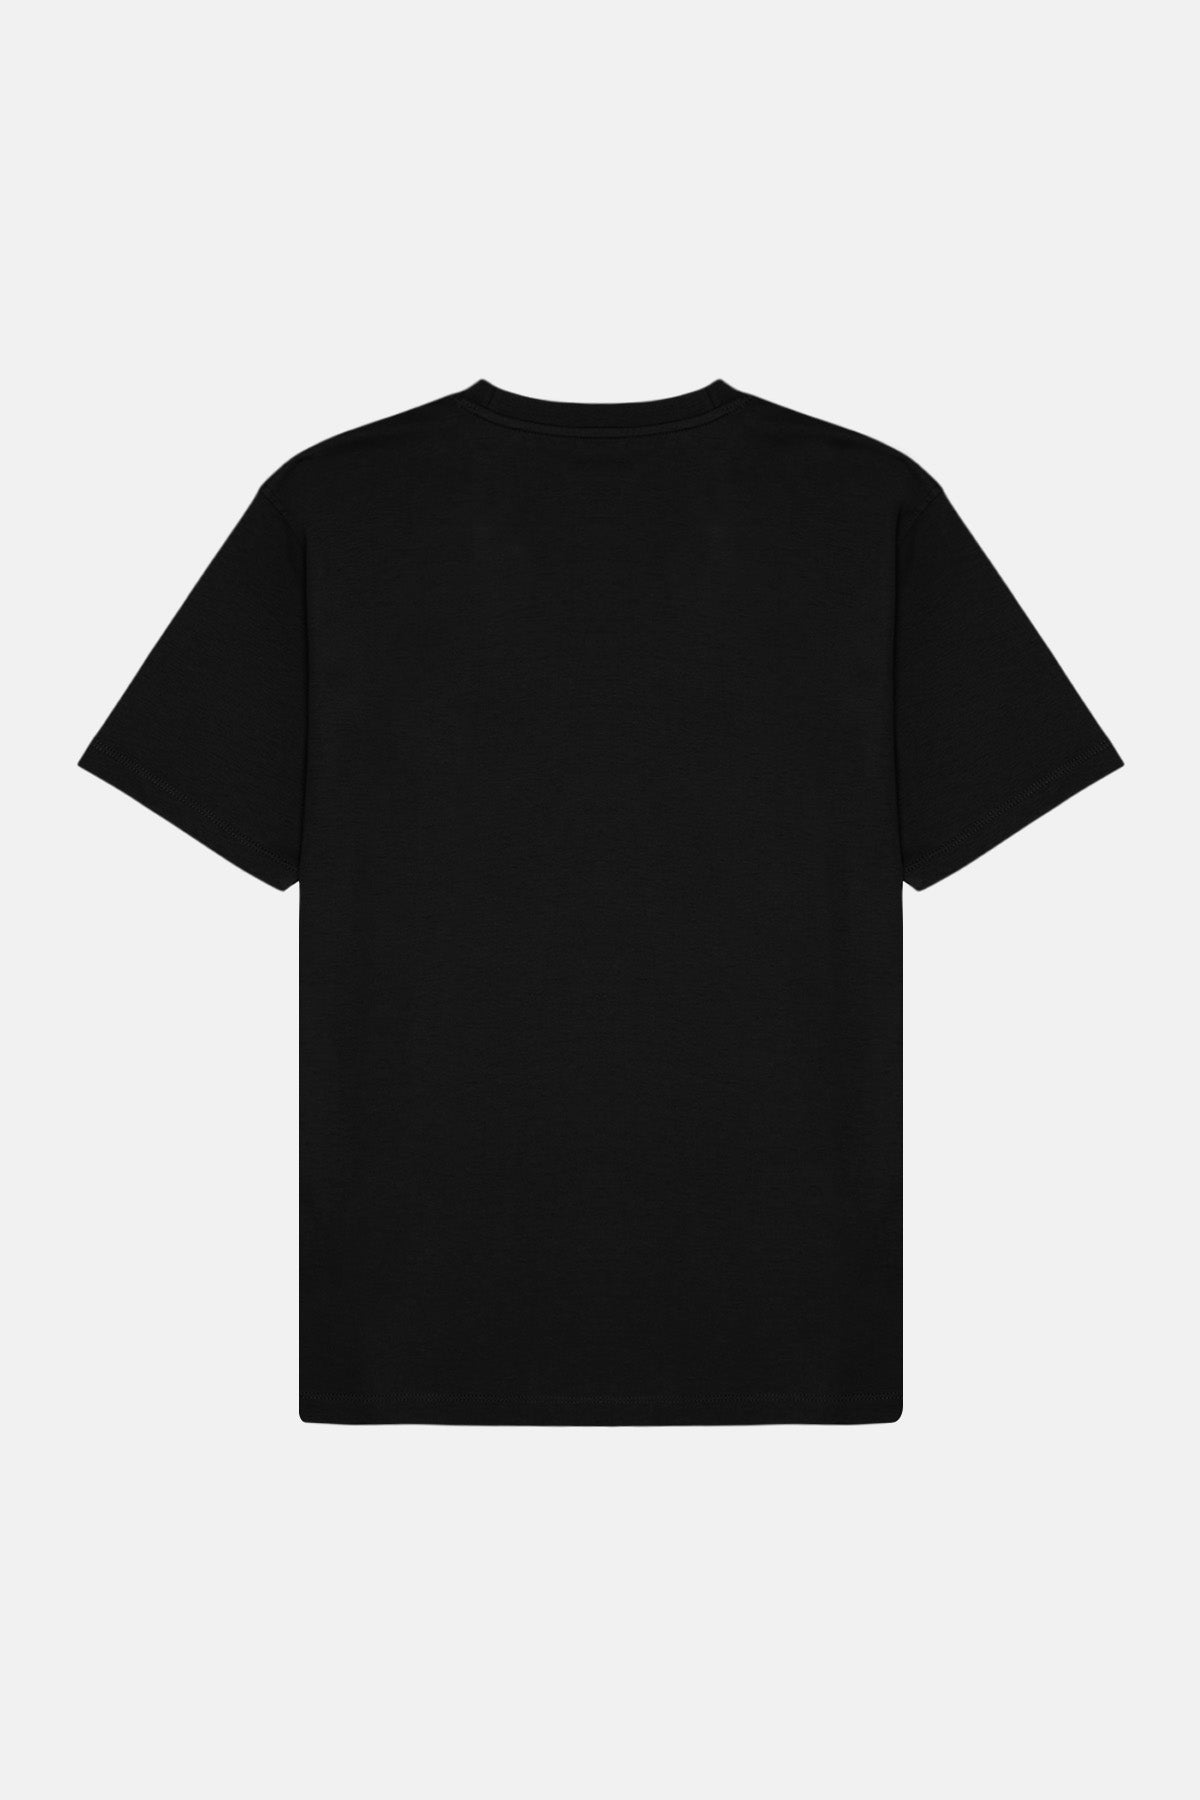 Kızıl Tilki Soft  T-Shirt  - Siyah